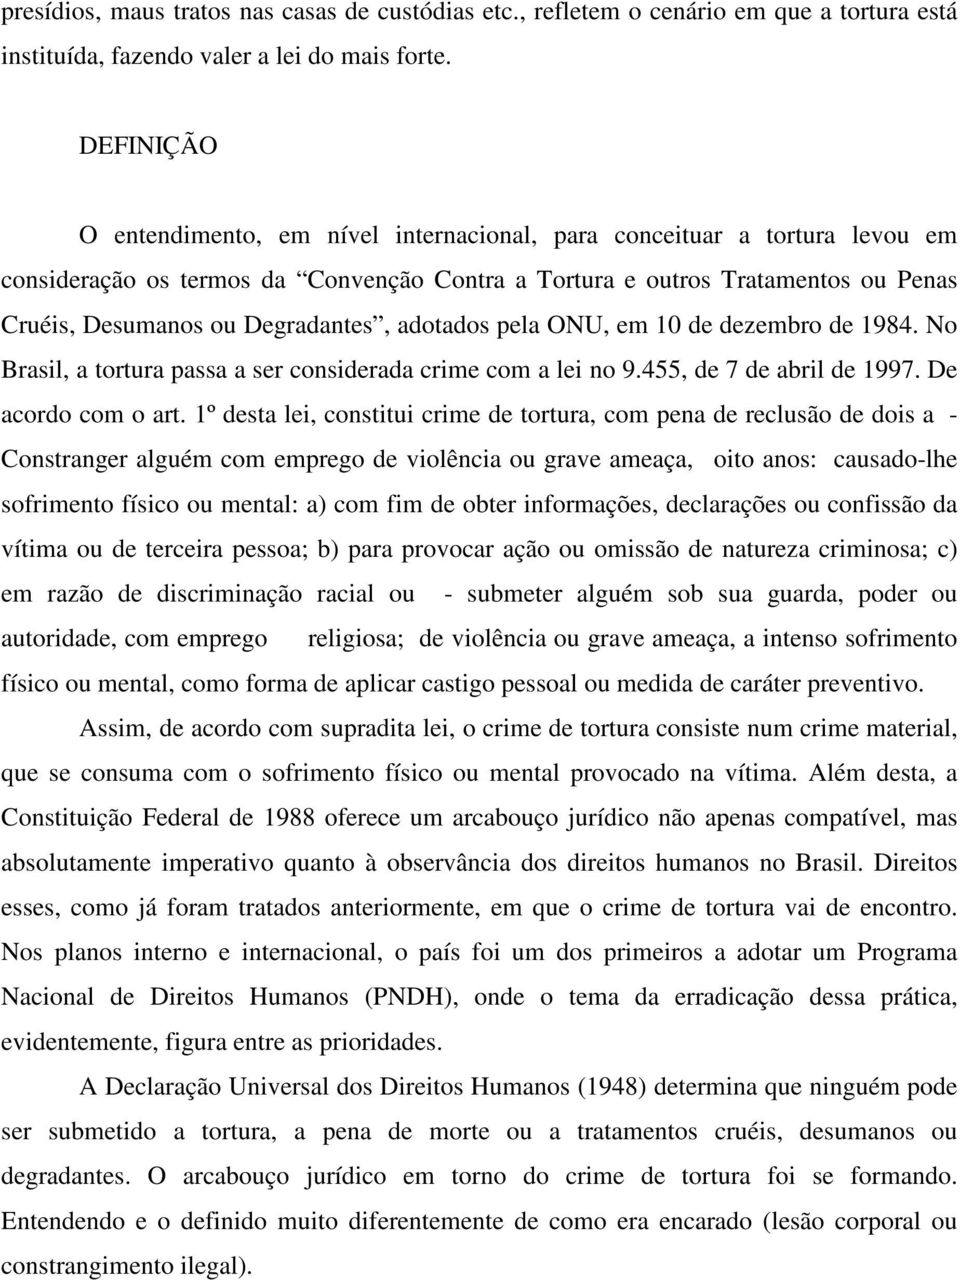 Degradantes, adotados pela ONU, em 10 de dezembro de 1984. No Brasil, a tortura passa a ser considerada crime com a lei no 9.455, de 7 de abril de 1997. De acordo com o art.